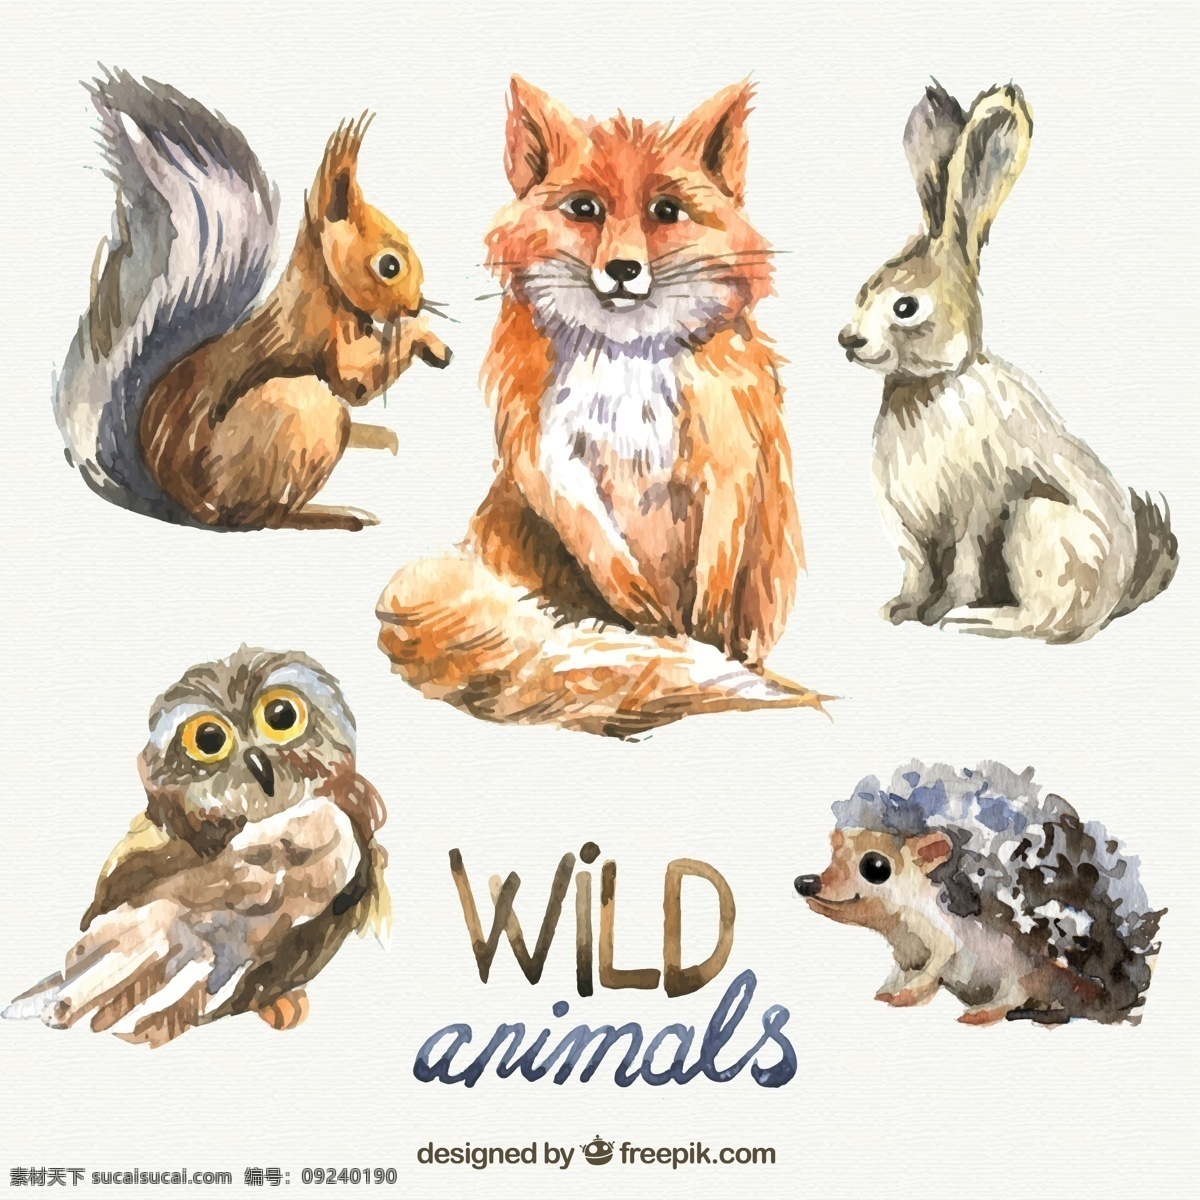 野生动物 矢量 手绘 动物 彩色 狐狸 猫头鹰 矢量素材 设计素材